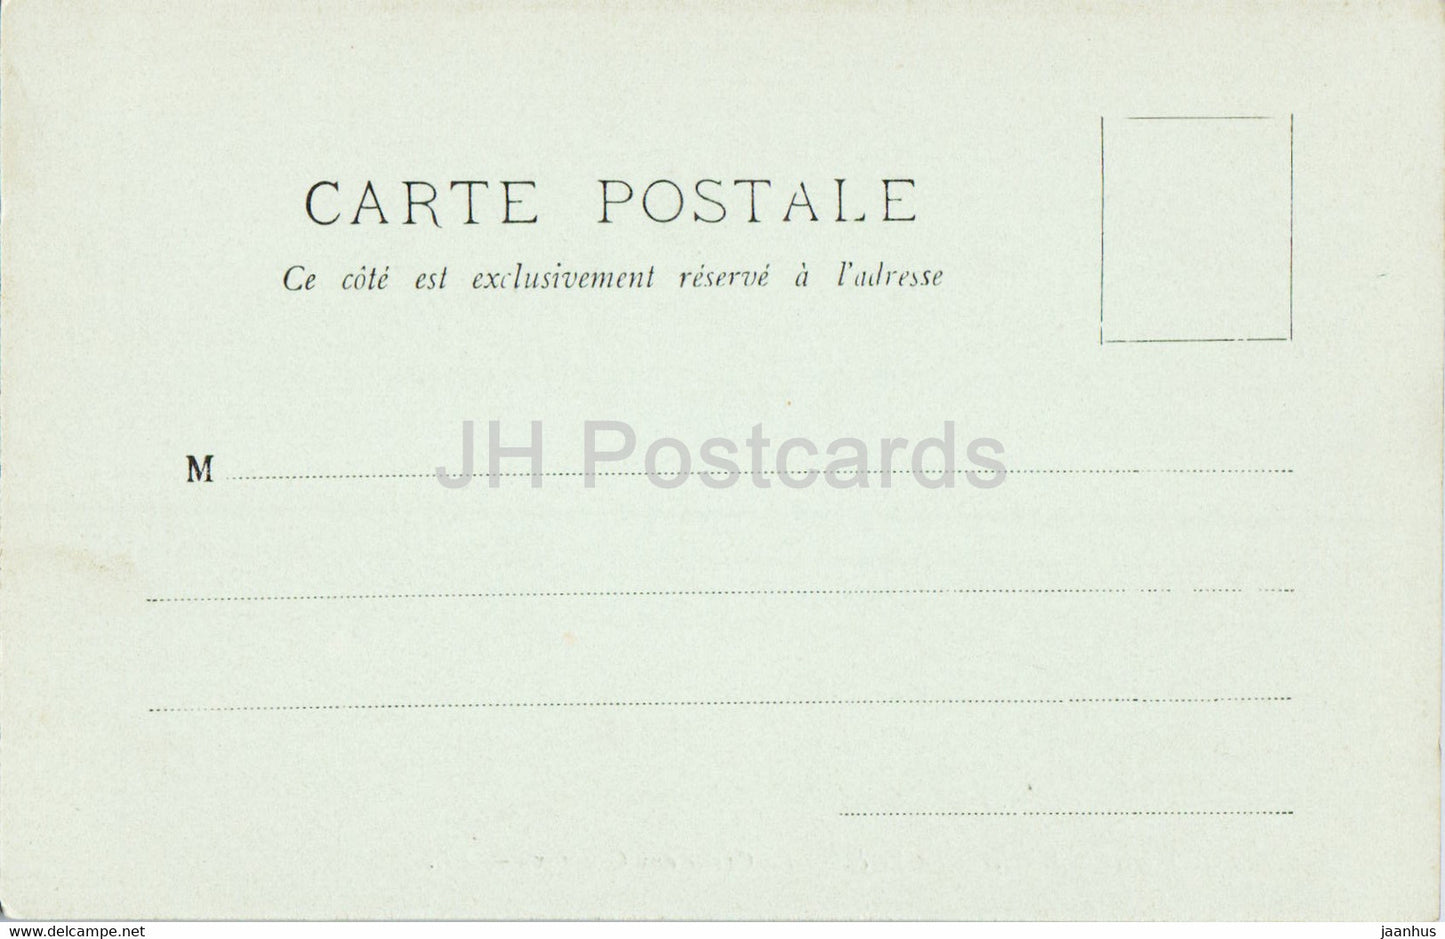 Fontainebleau - La Foret - La Grotte aux Cristaux - 124 - alte Postkarte - Frankreich - unbenutzt